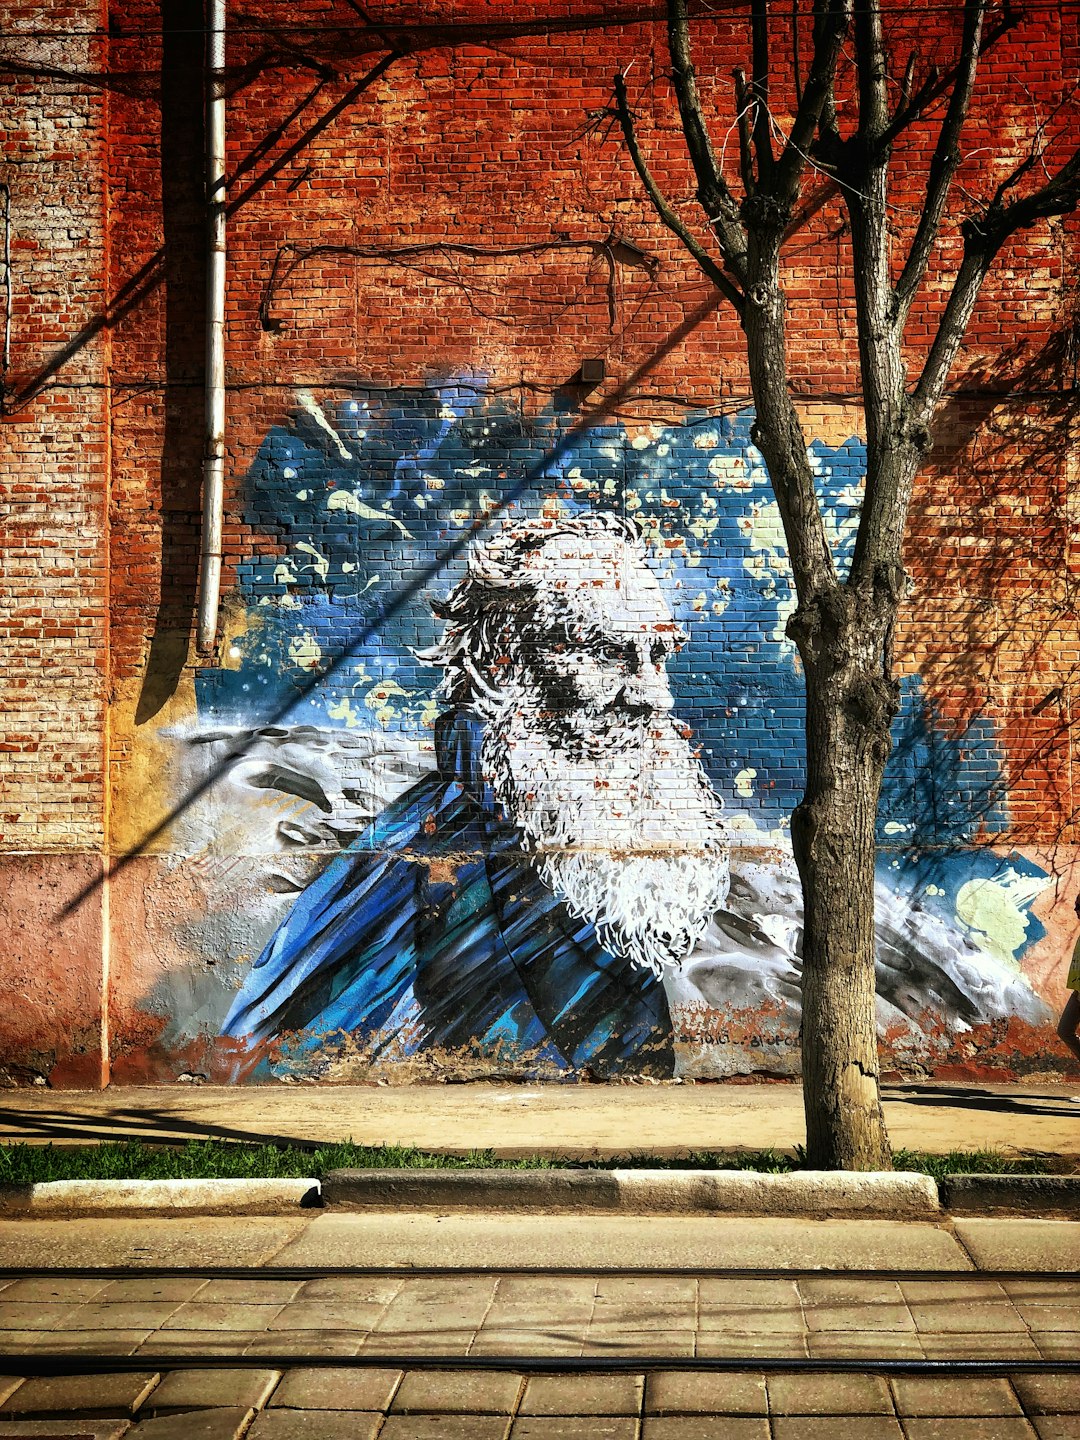 Lev Tolstoy Graffiti in Tula (Russia)